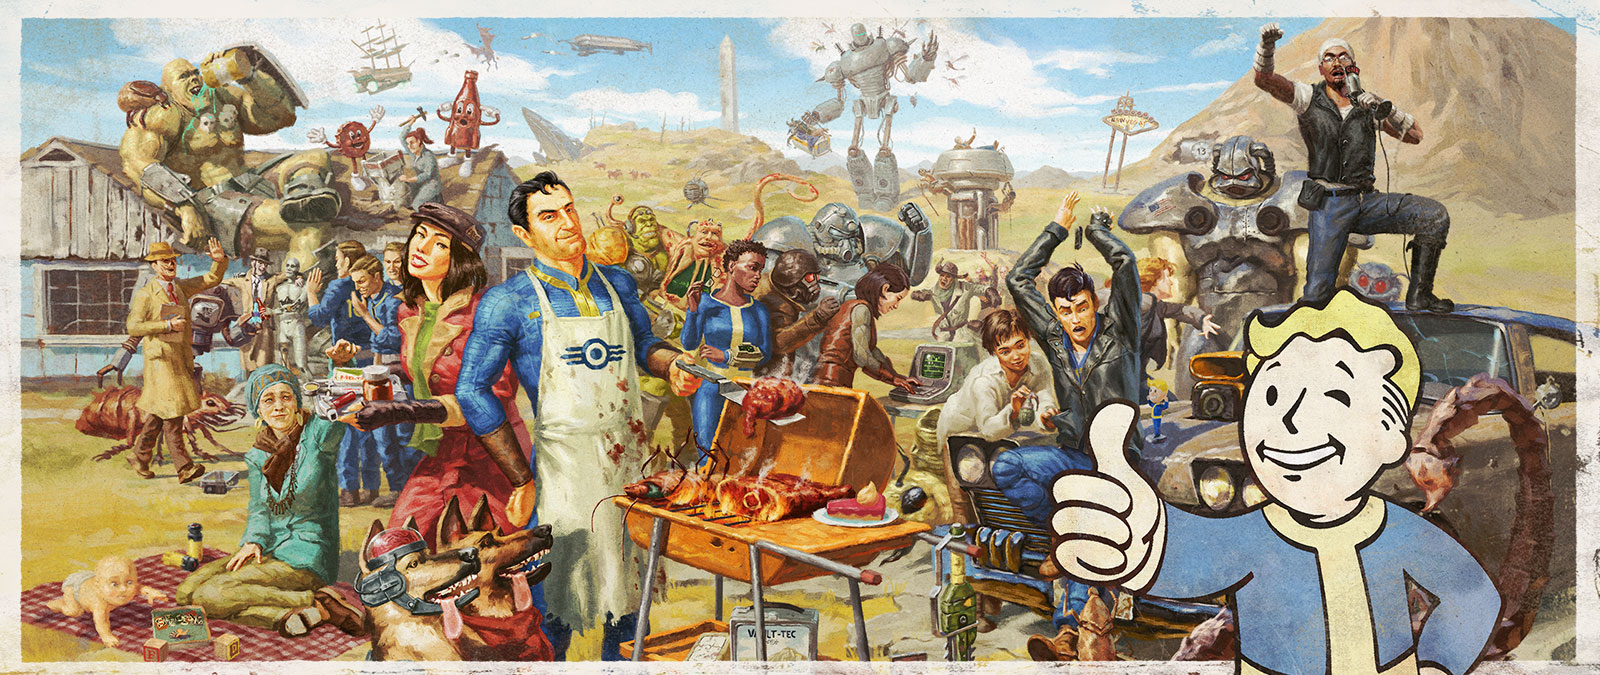 Un assortiment de personnages de la franchise Fallout réunis pour un bon barbecue en famille.